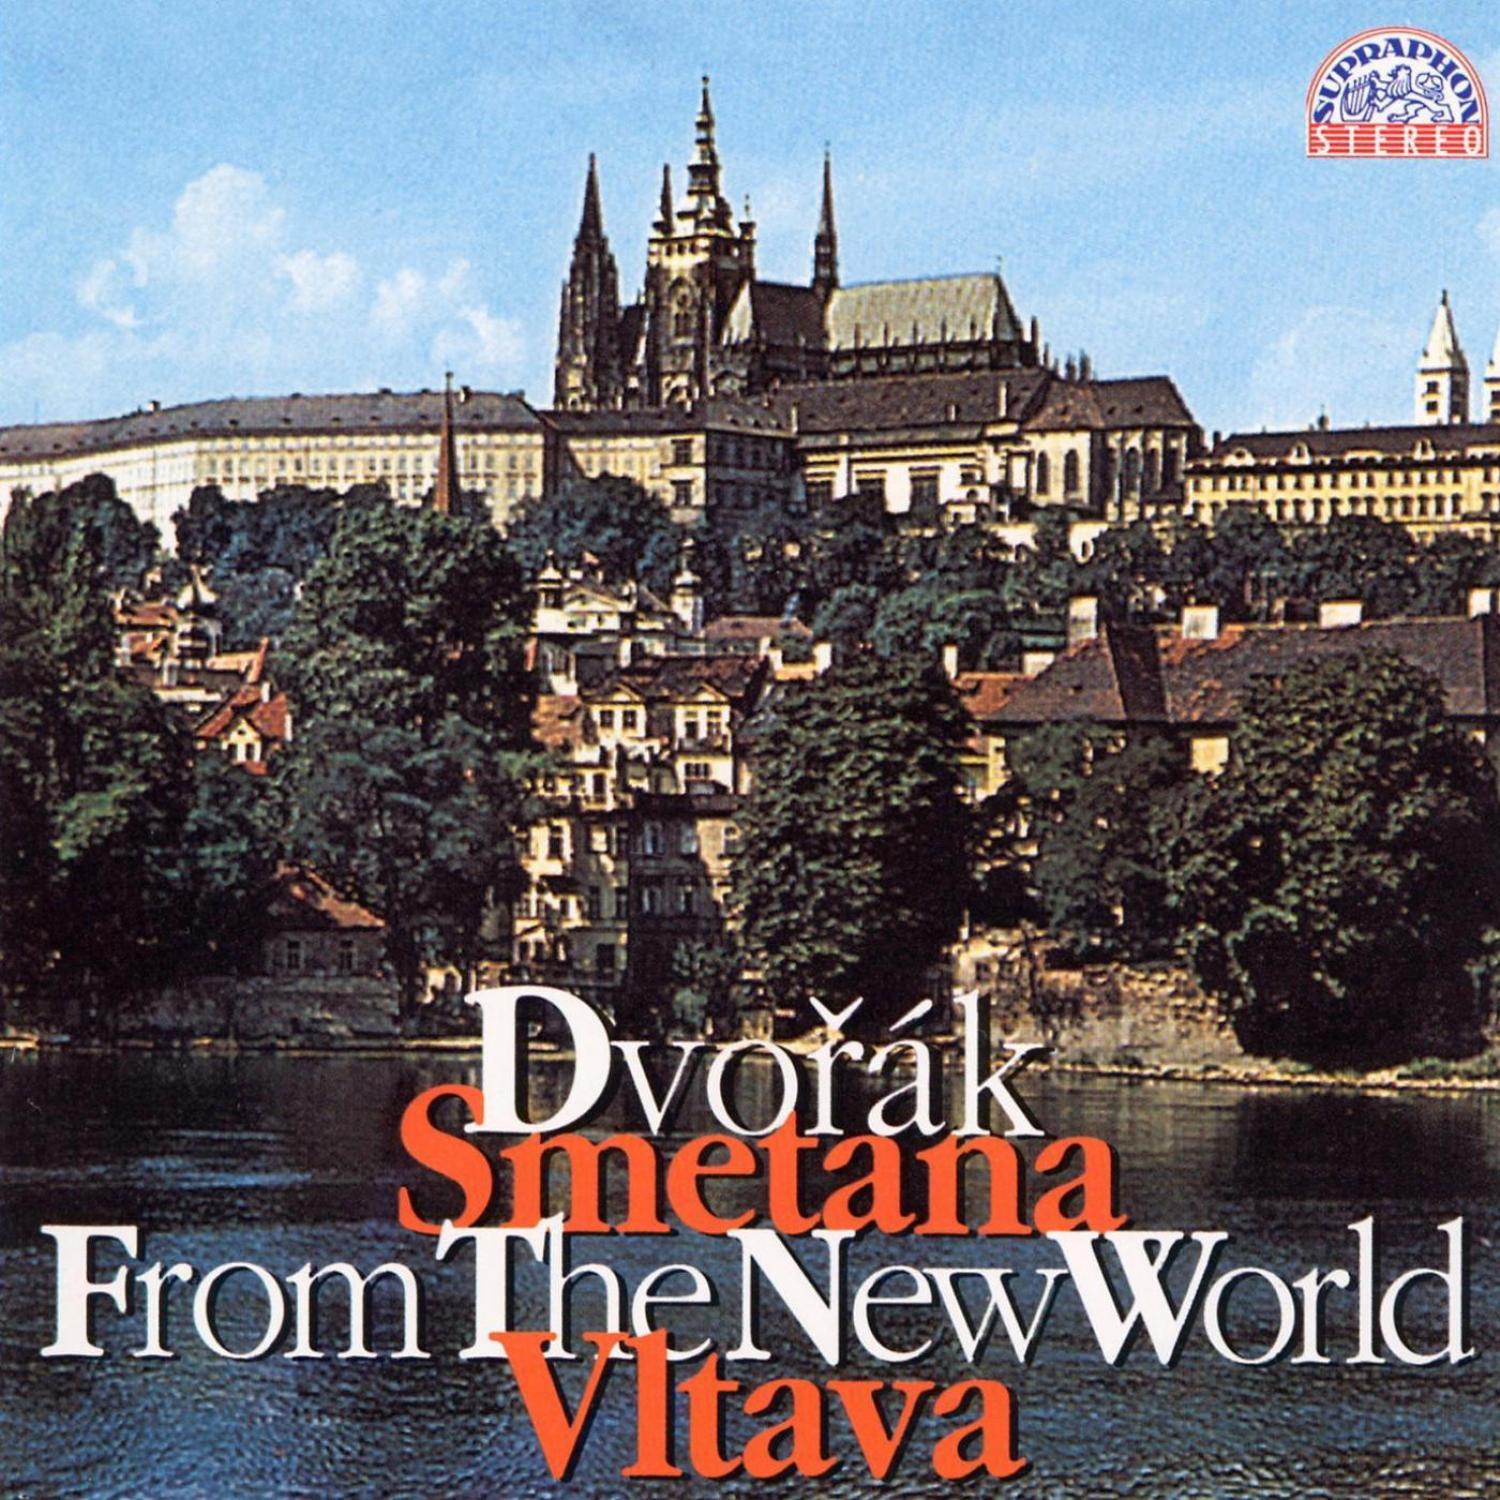 Dvoa k: Symphony No. 9 " From the New World", Vltava